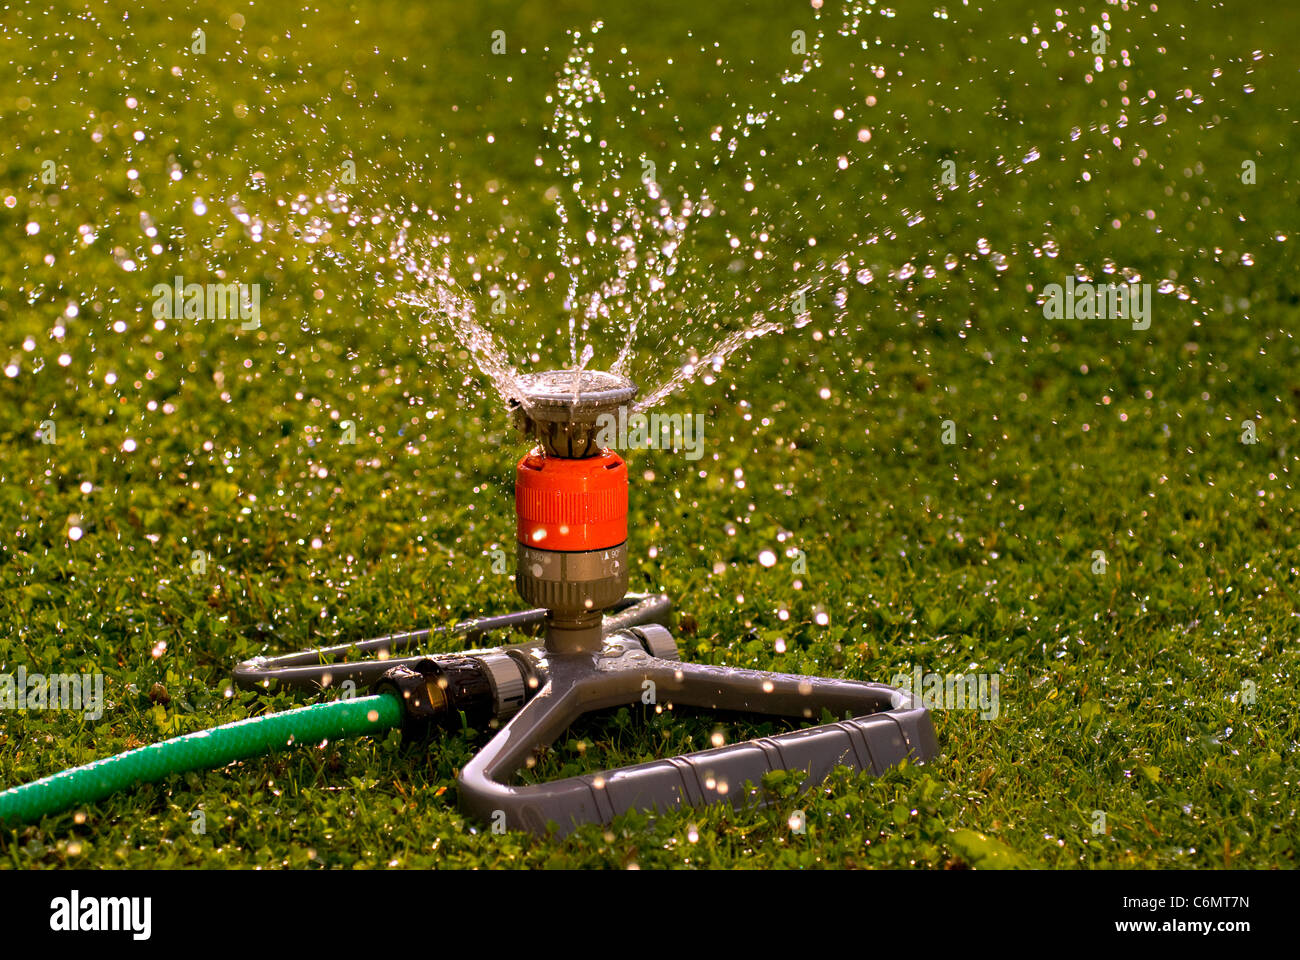 Nahaufnahme eines Sprengers, die Wasser über eine grüne Wiese verteilt Stockfoto